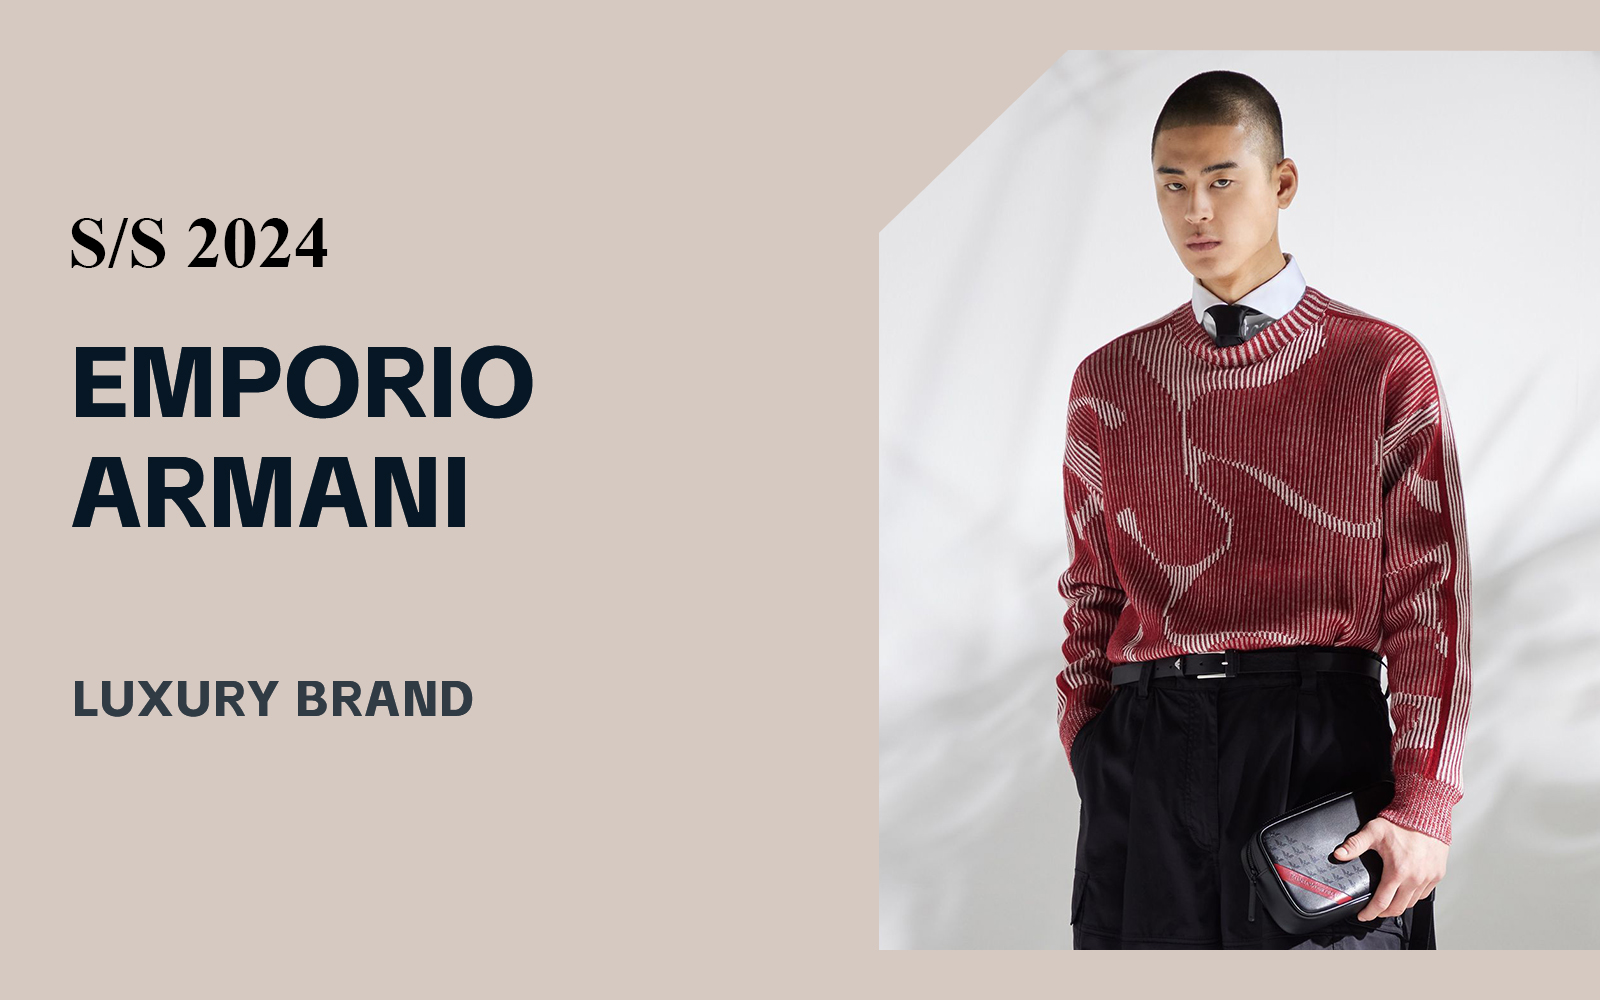 Fashion Taste -- The Analysis of Emporio Armani The Luxury Menswear Brand